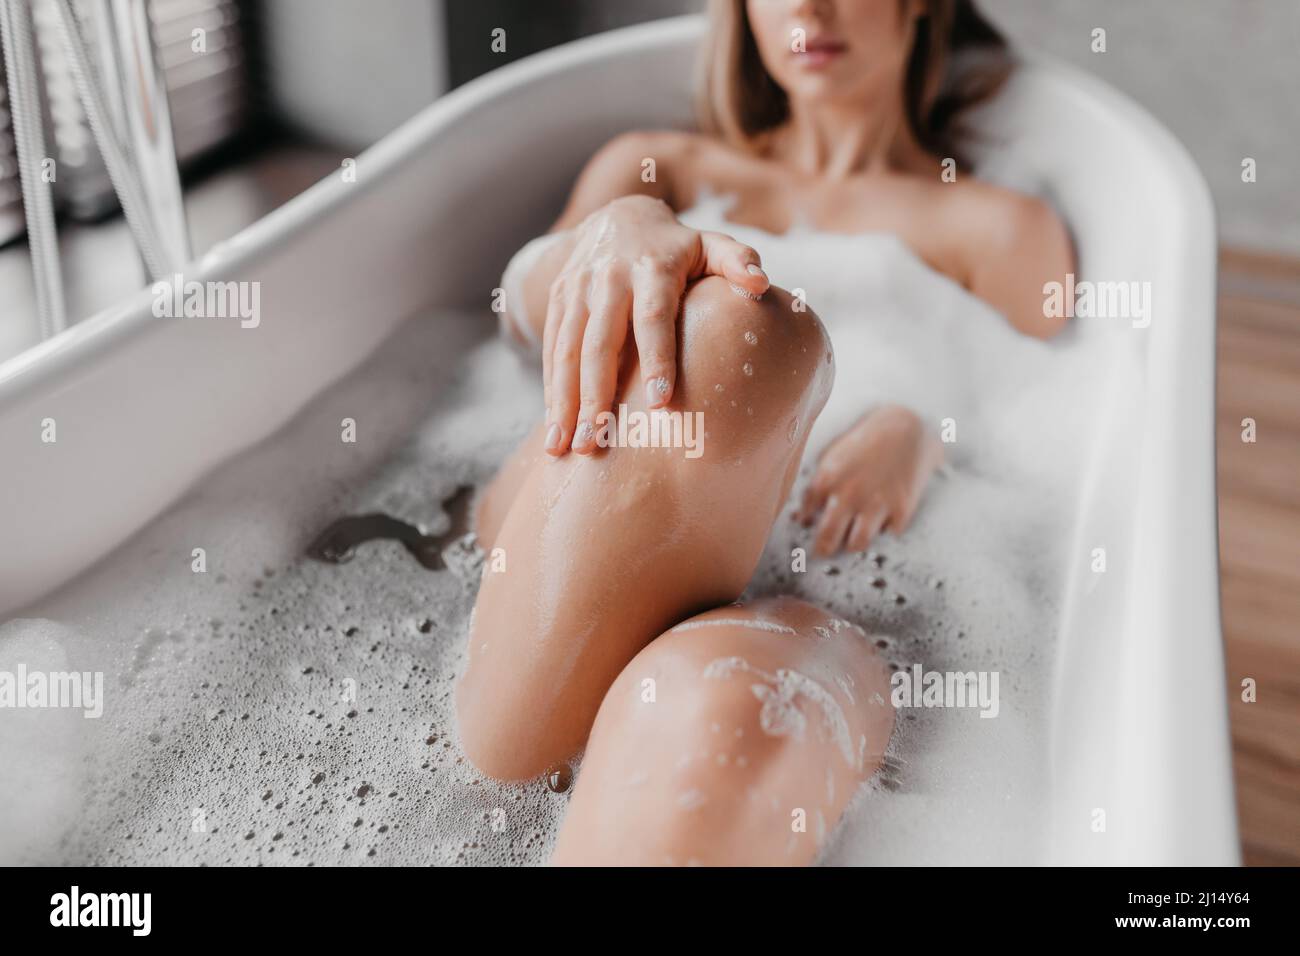 Verfahren zur Sauberkeit und häuslichen Schönheit. Junge Dame, die sich in der Badewanne entspannt und Schaum und berührende Beine genießt Stockfoto